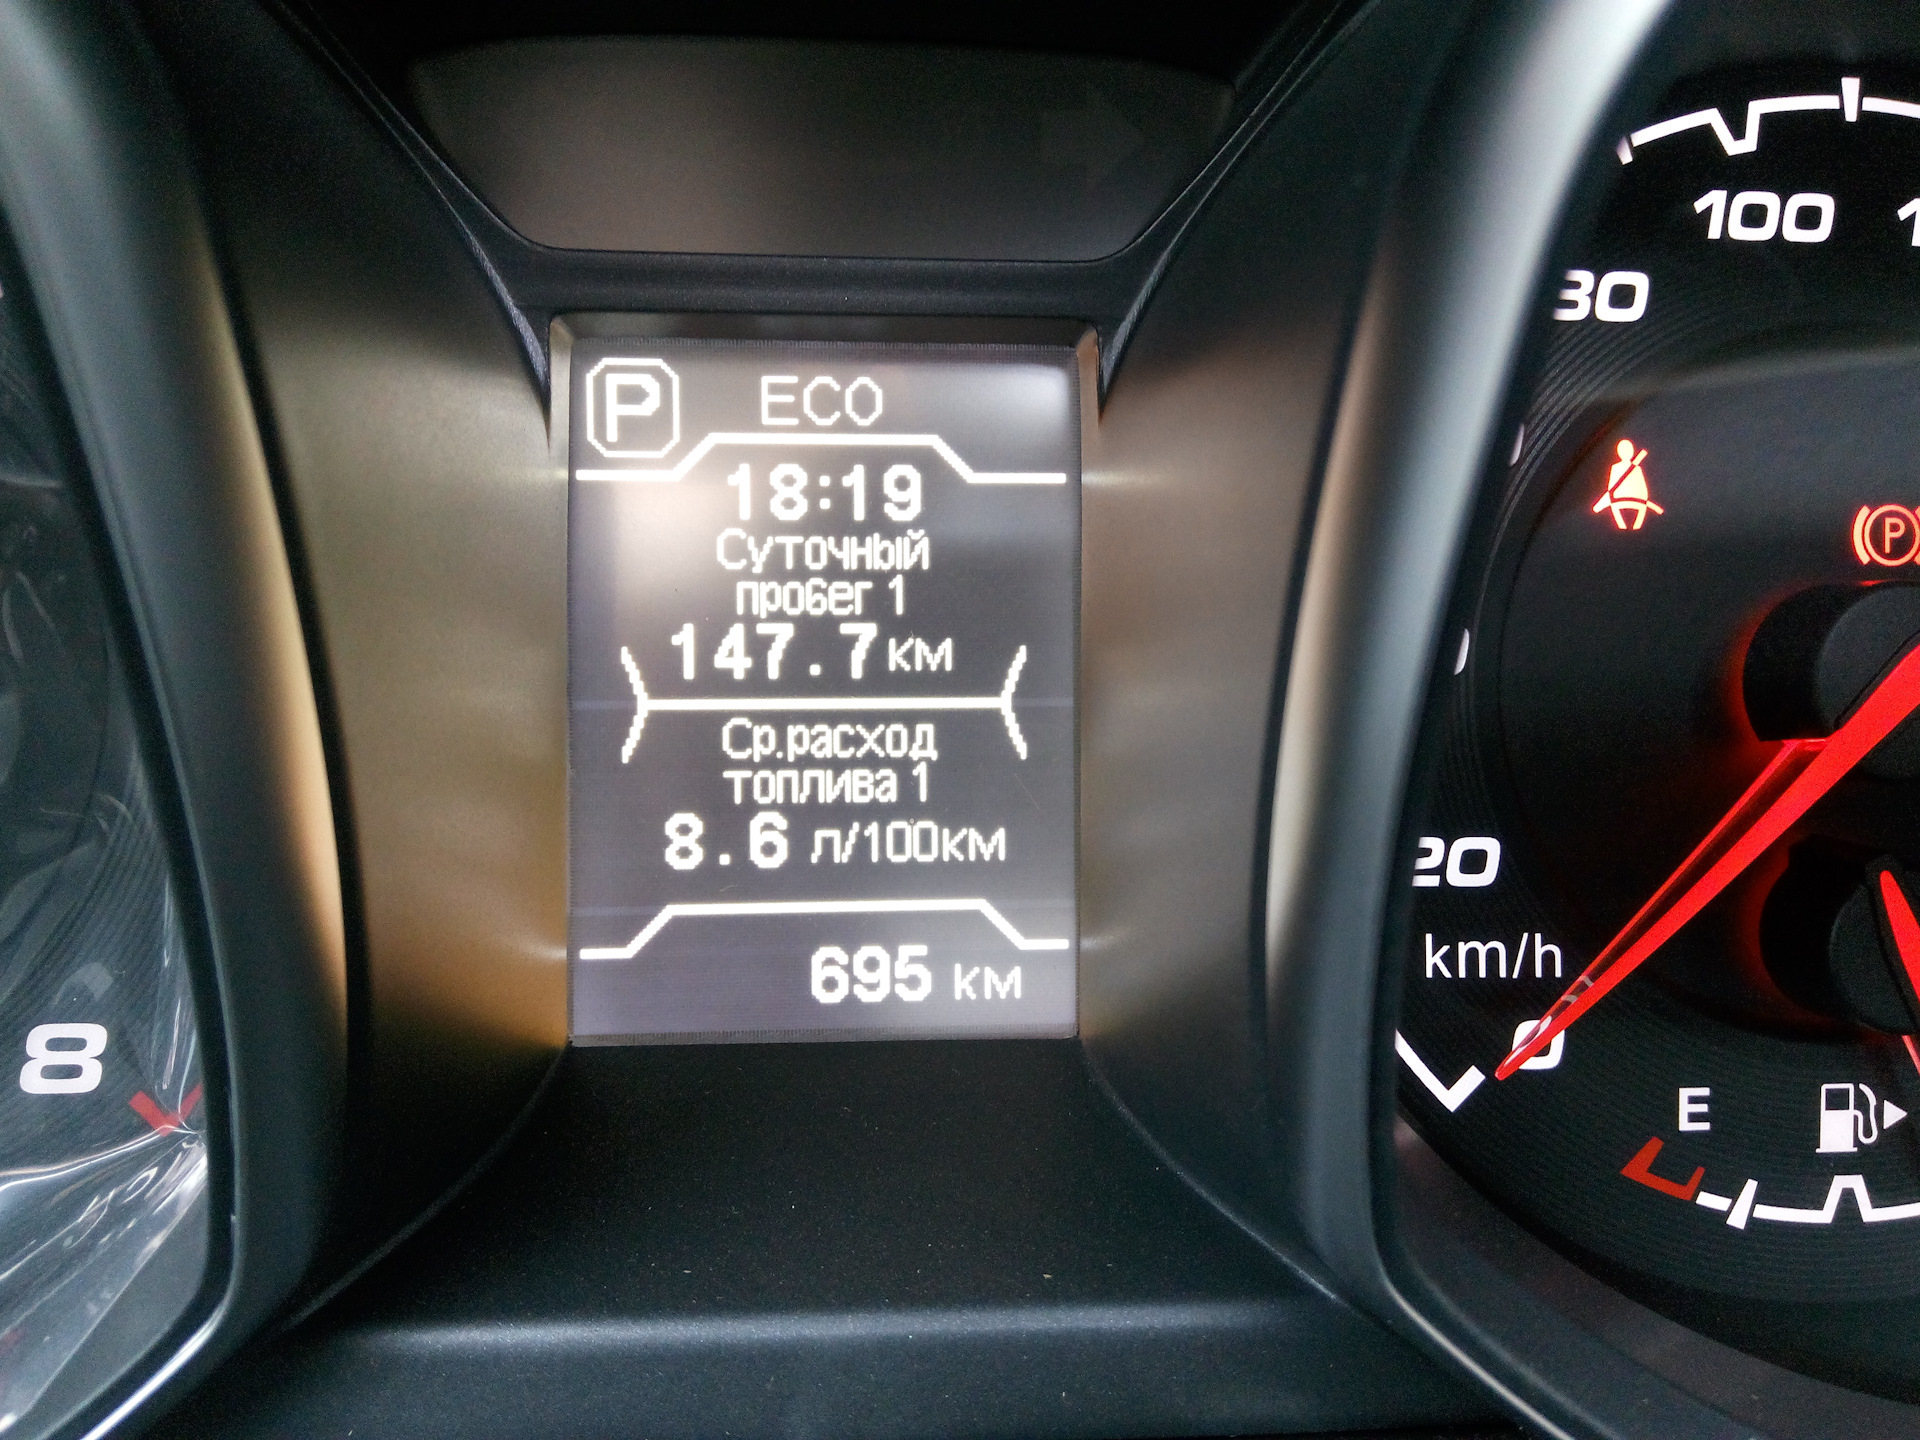 Среднесуточный пробег автомобиля. Расход топлива. Чери Тигго 8 про расход топлива. Измерение расхода топлива в автомобиле. Chery Tiggo 8 расходы топлива.